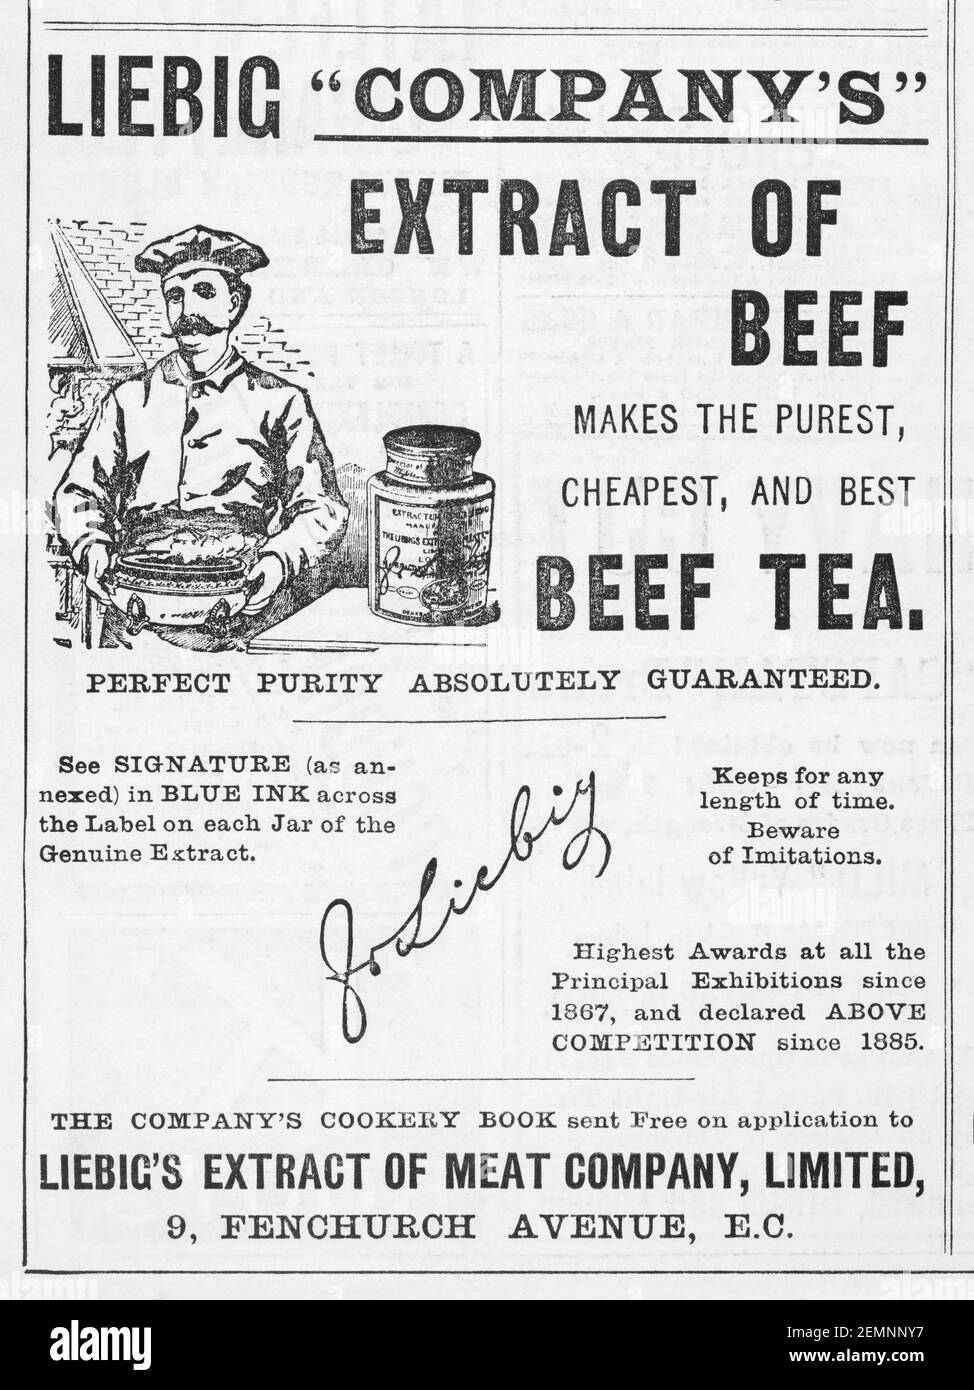 Estratto di manzo vecchio vittoriano Liebig & pubblicità del tè di manzo dal 1894 - prima dell'alba degli standard pubblicitari. Storia di pubblicità, annunci di cibo vecchio. Foto Stock